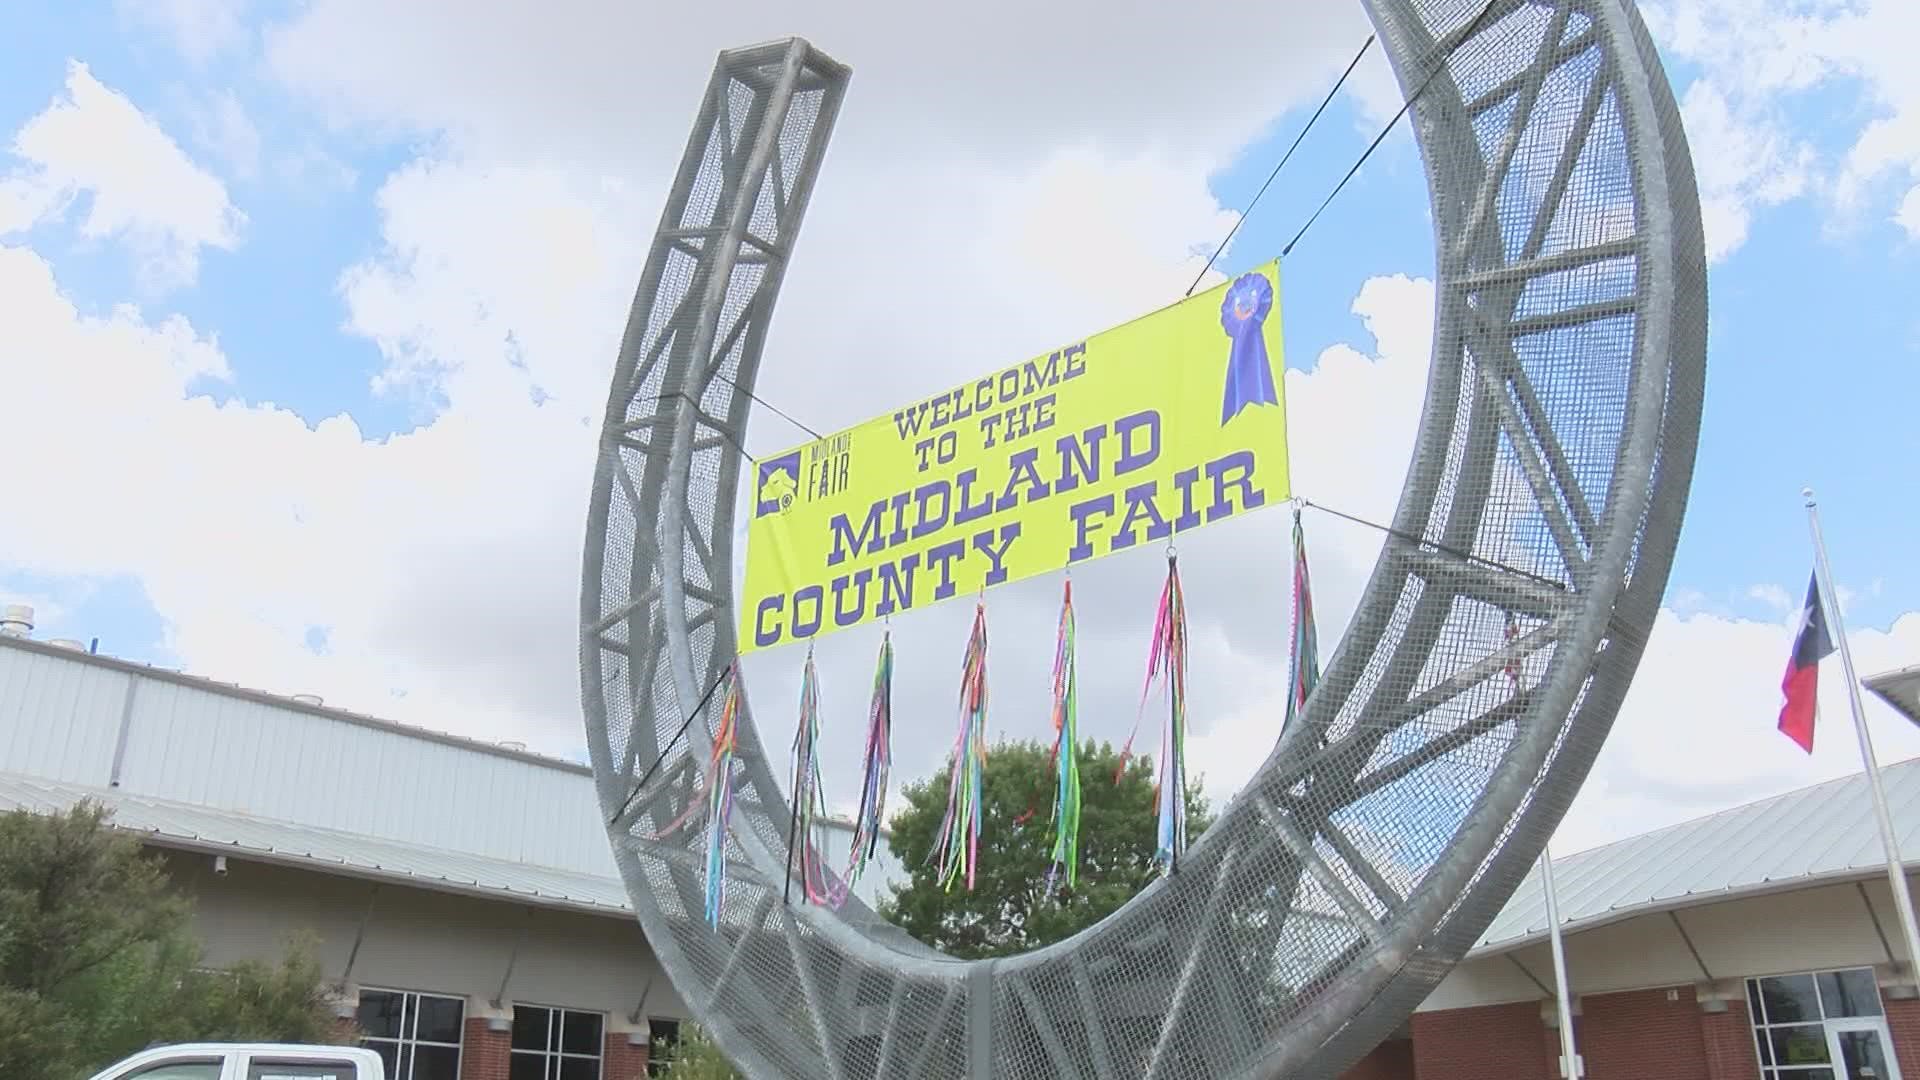 Midland County Fair returns for 2022 edition